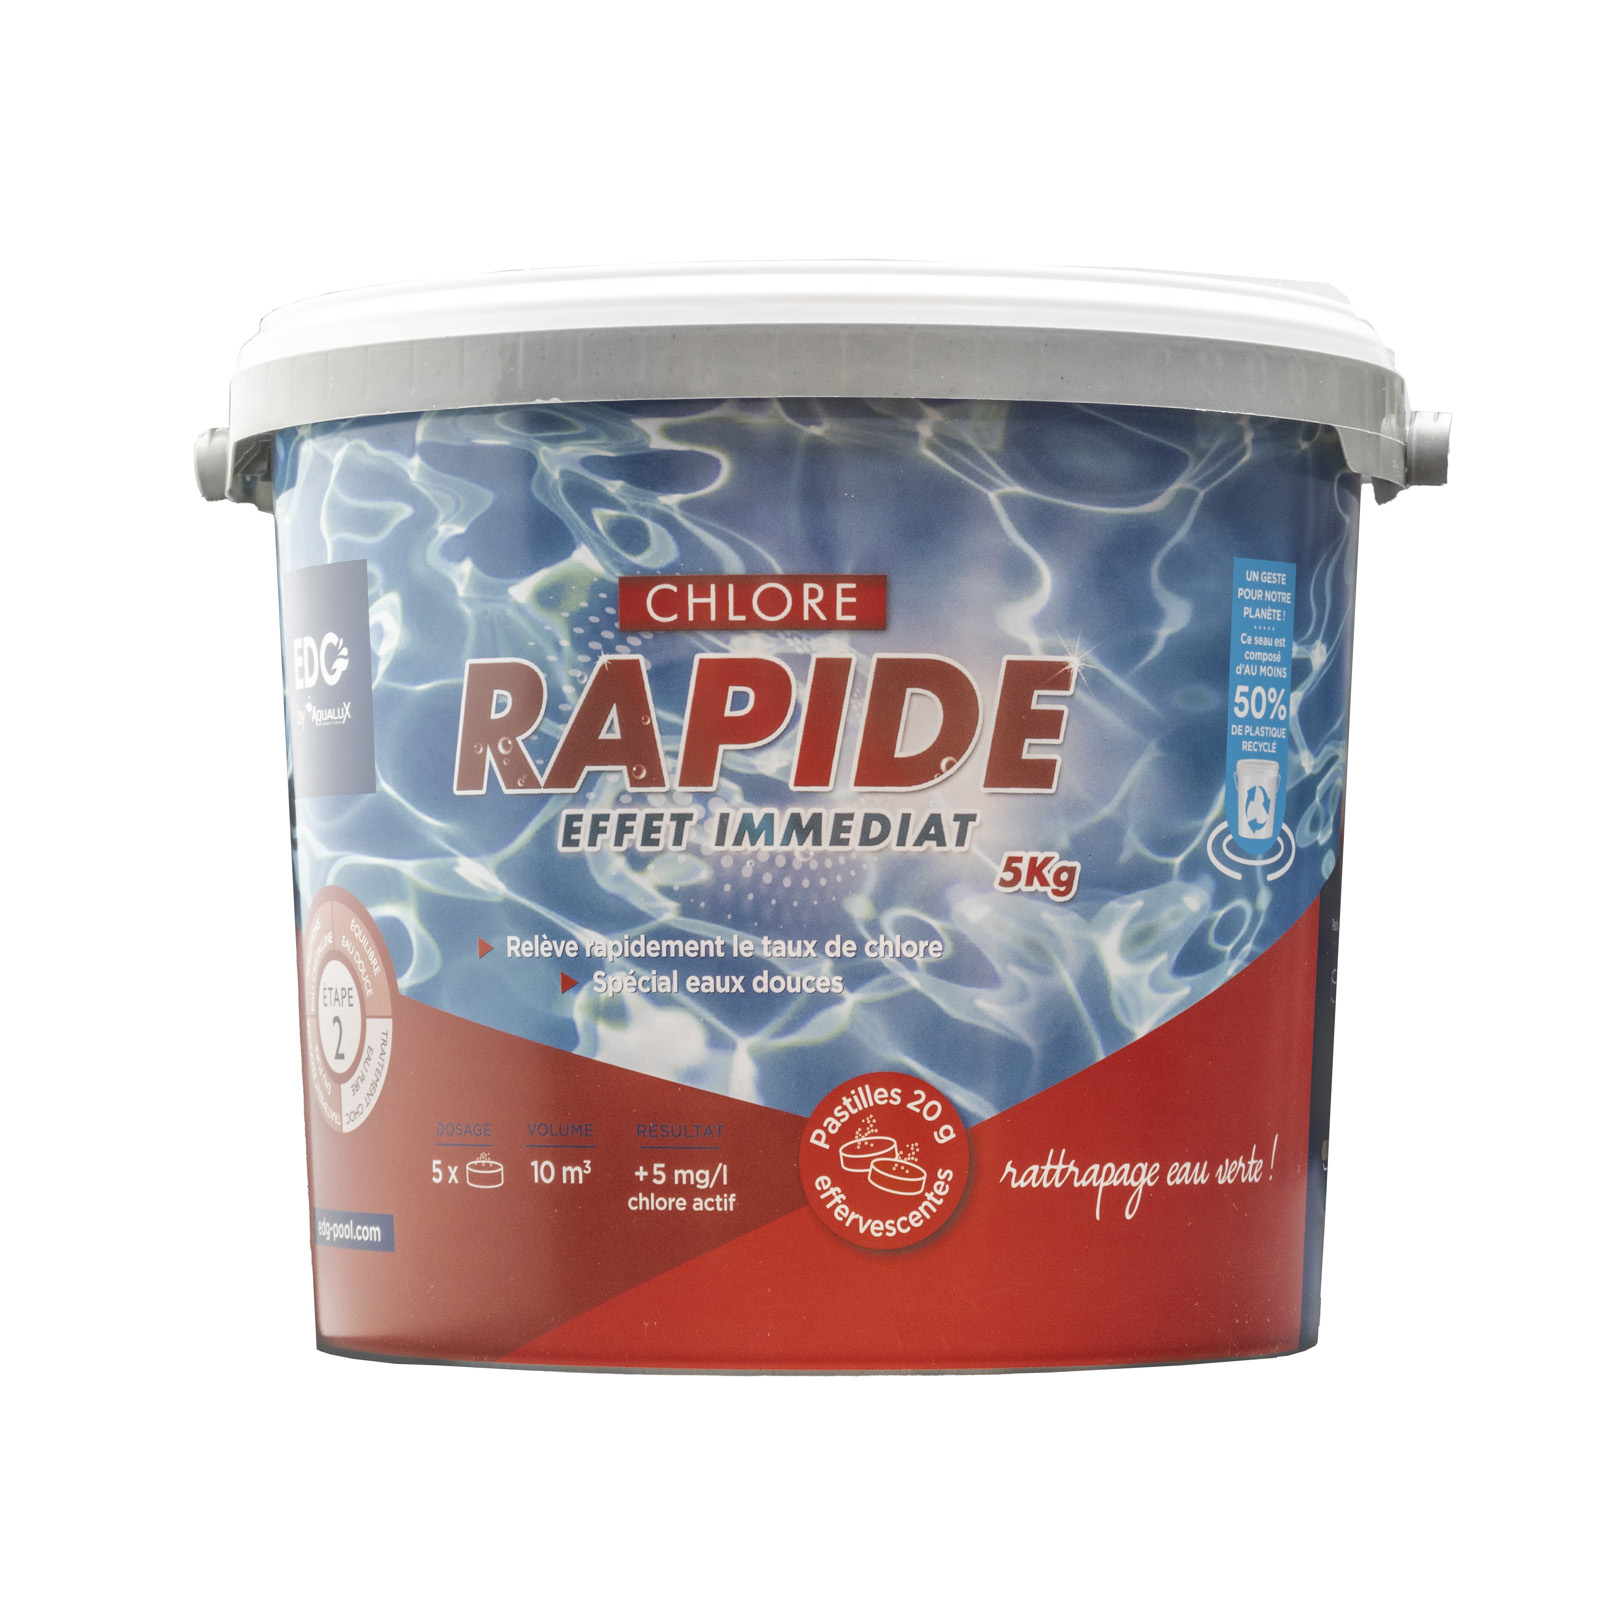 Chlore Rapide Pastilles de 20 gr - EDG By AQUALUX